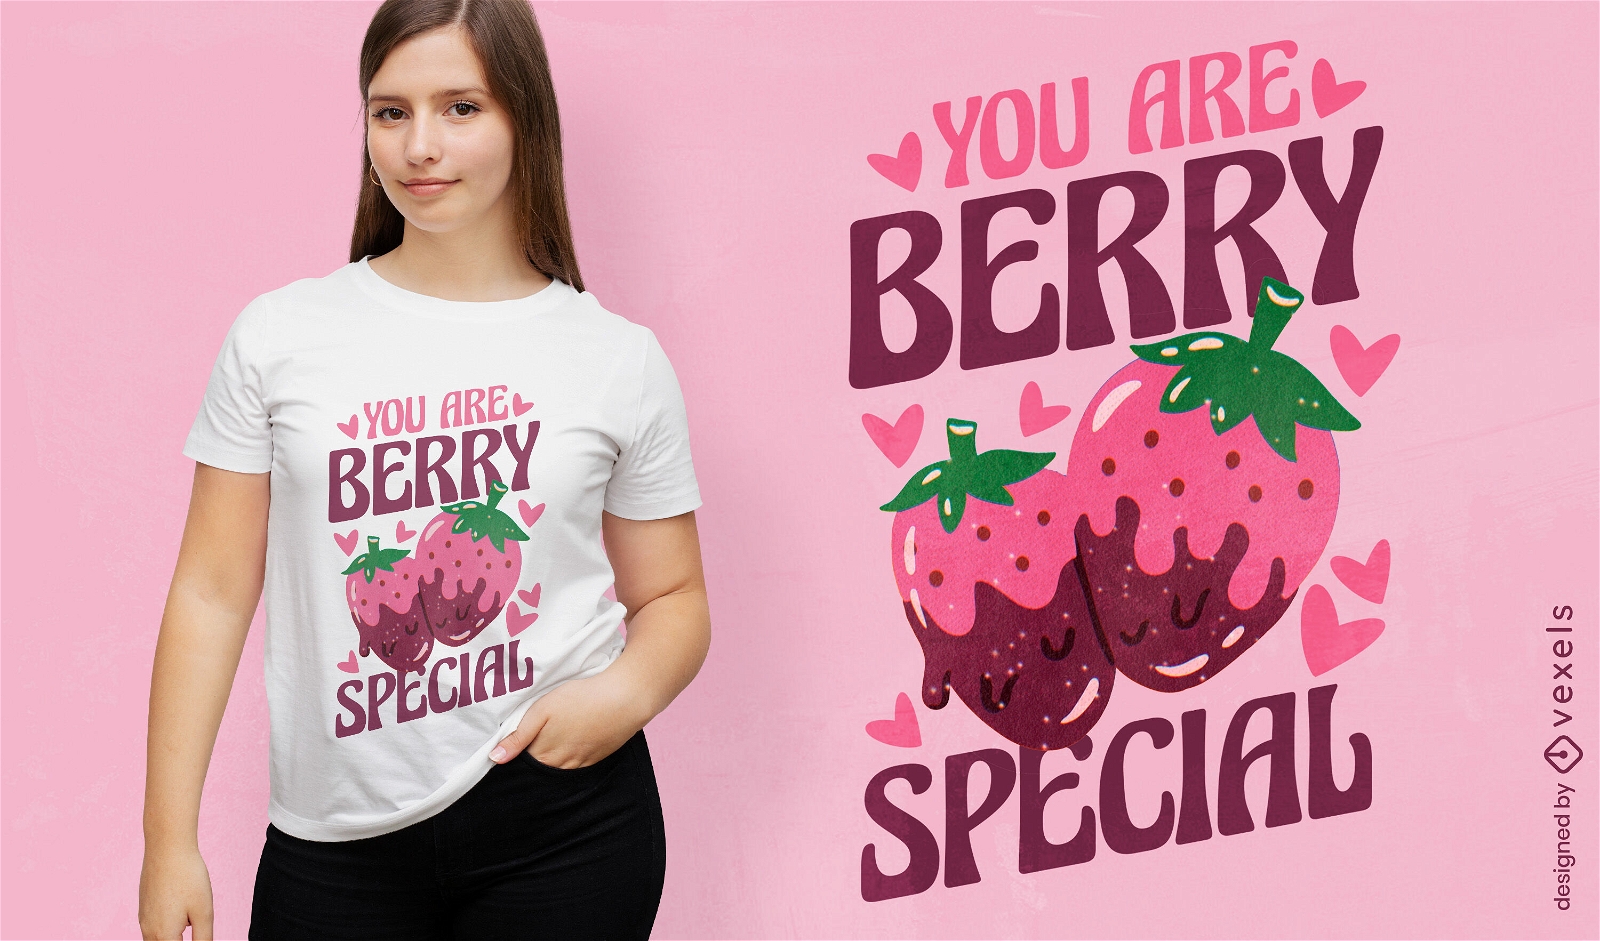 Dise?o de camiseta especial Berry.